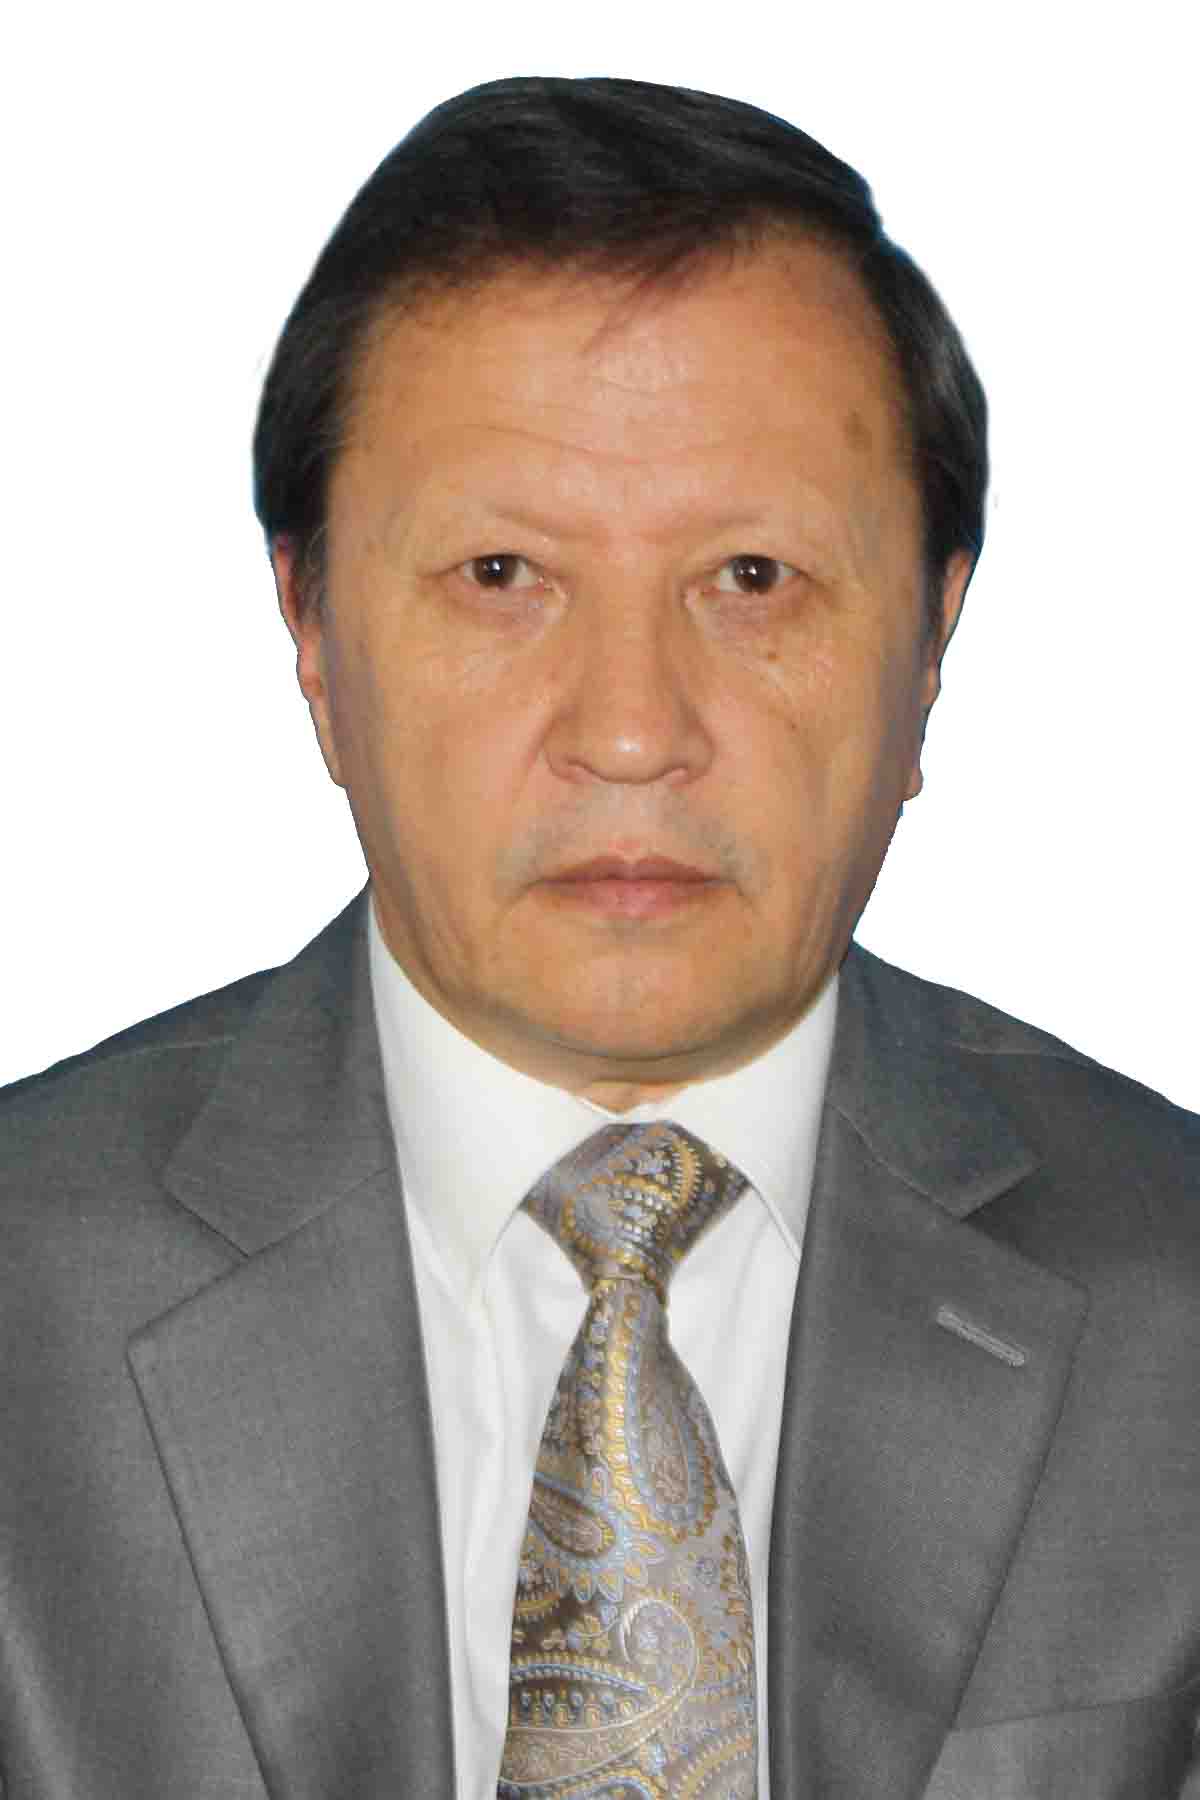 Borikhan Shaumarov